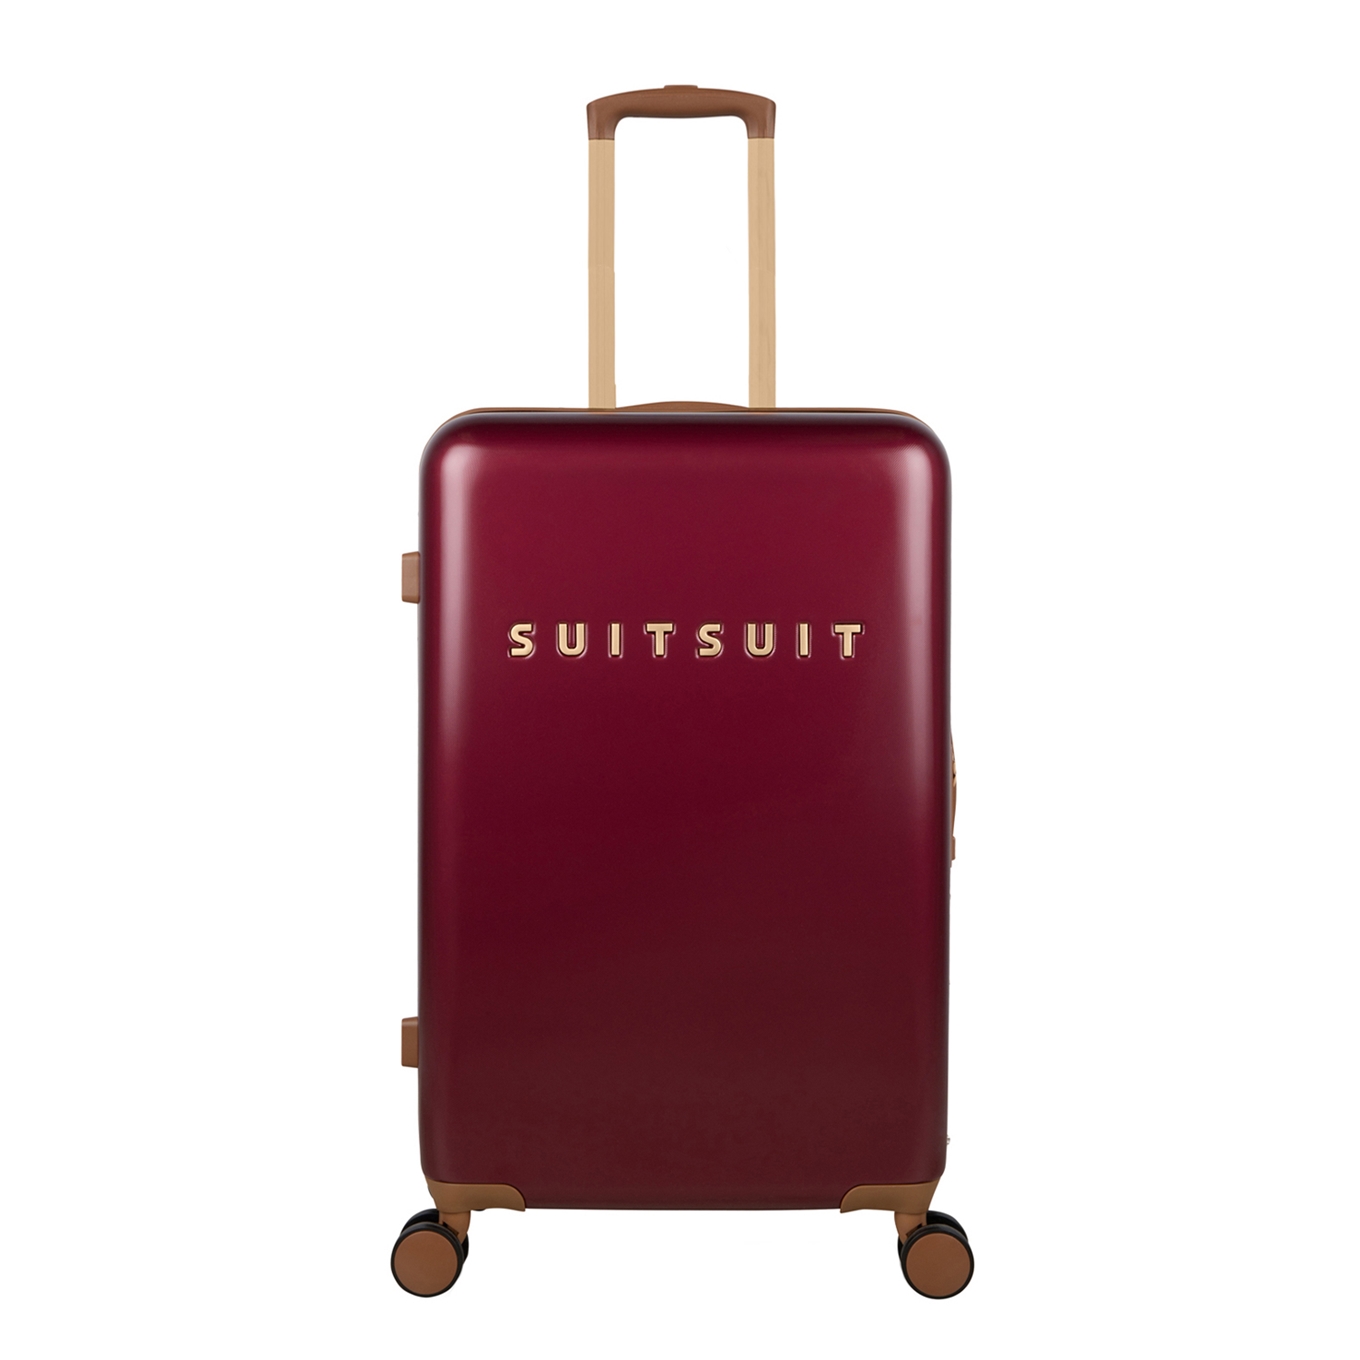 persoon verkouden worden seks SuitSuit koffer kopen » 150+ SuitSuit koffers - Koffervergelijker.nl